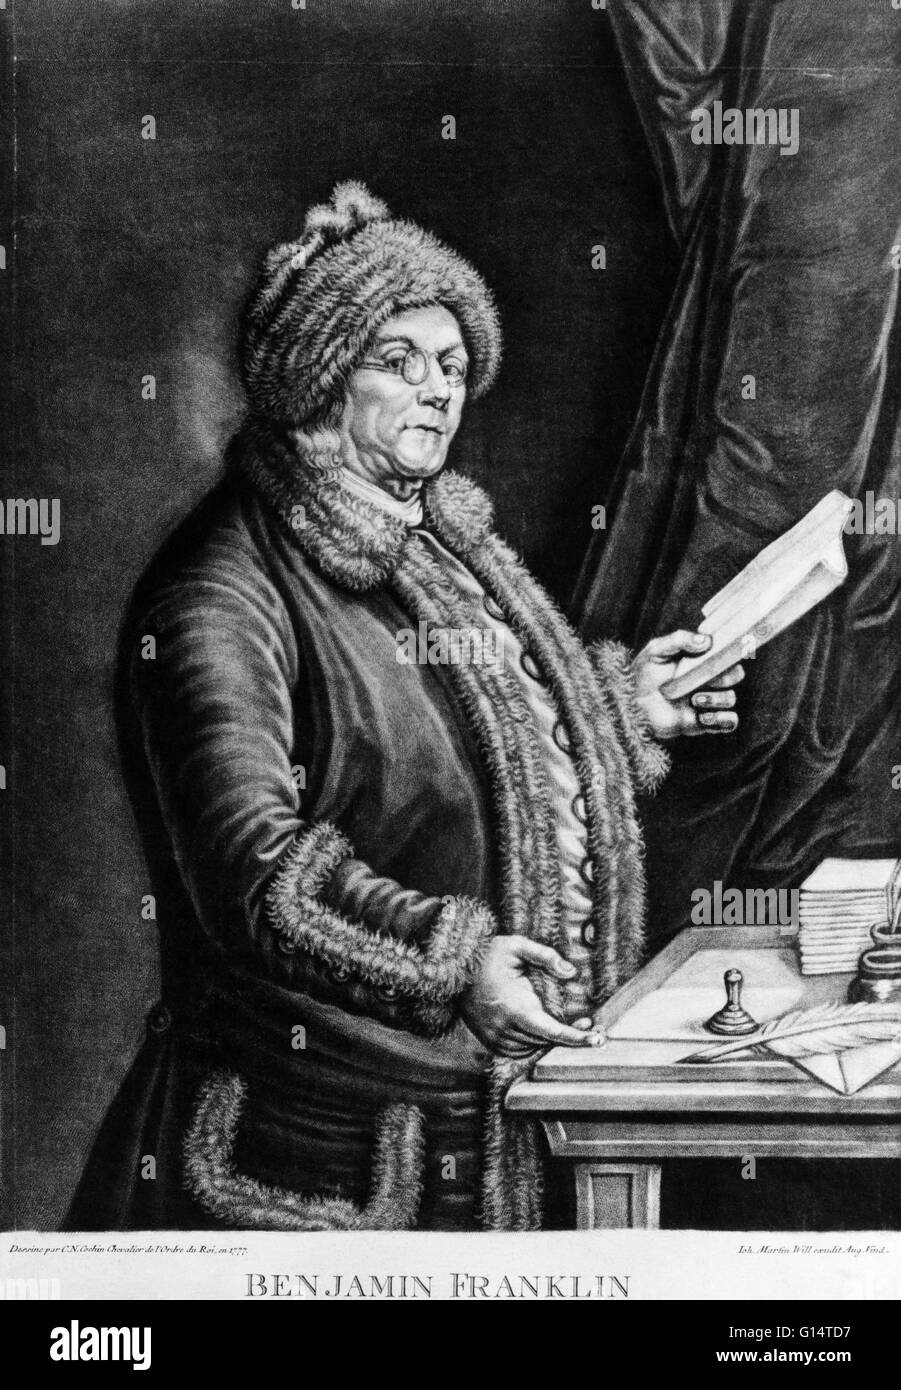 Benjamin Franklin. Gravure par H. B. Hall, 1879. Benjamin Franklin (17 janvier 1706 - 17 avril, 1790 ) a été l'un des pères fondateurs des États-Unis. Il était un auteur, de l'imprimante, le théoricien politique, homme politique, ministre des Postes, de scientifique, musicien, invent Banque D'Images